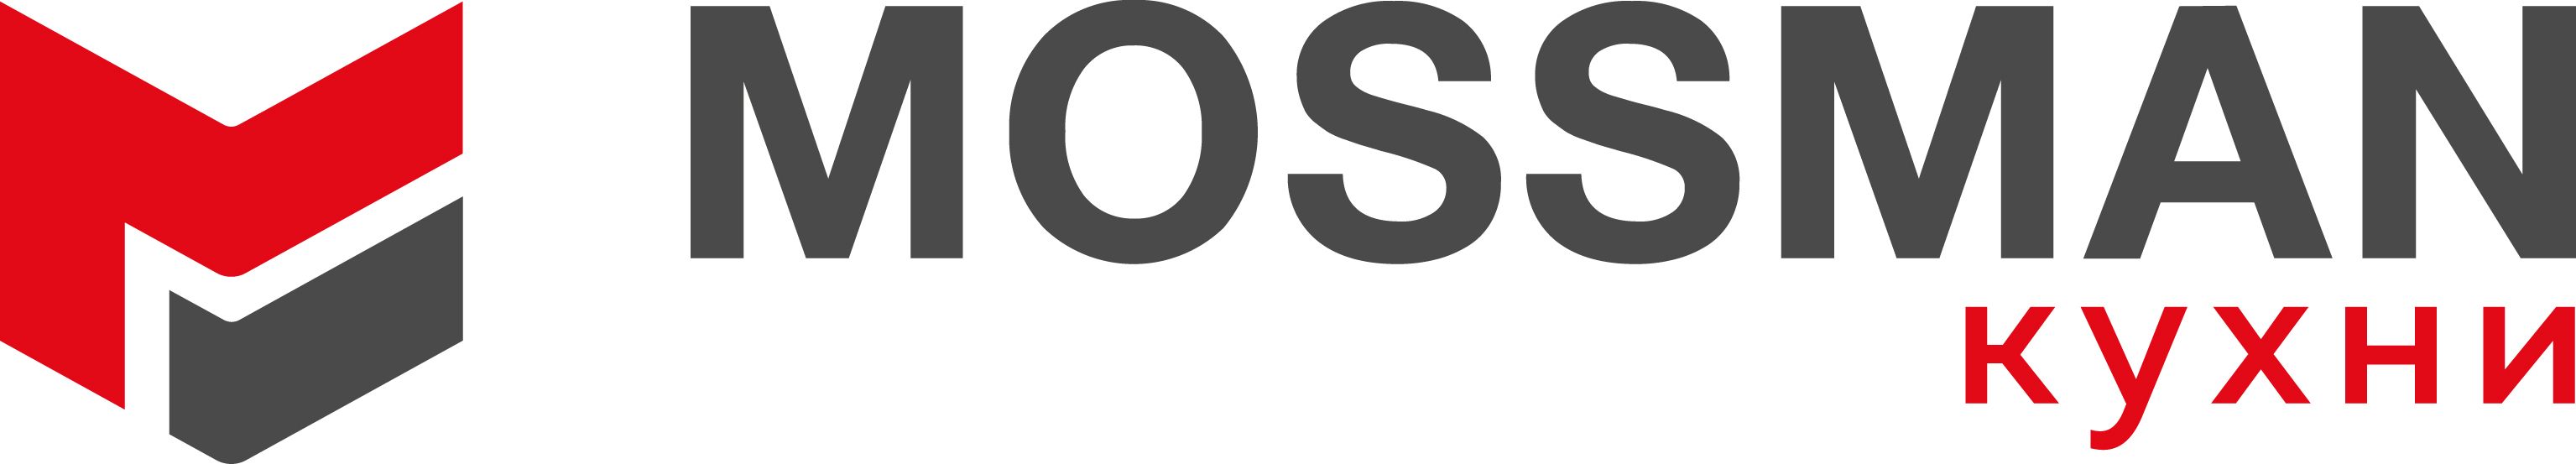 Логотип Mossman